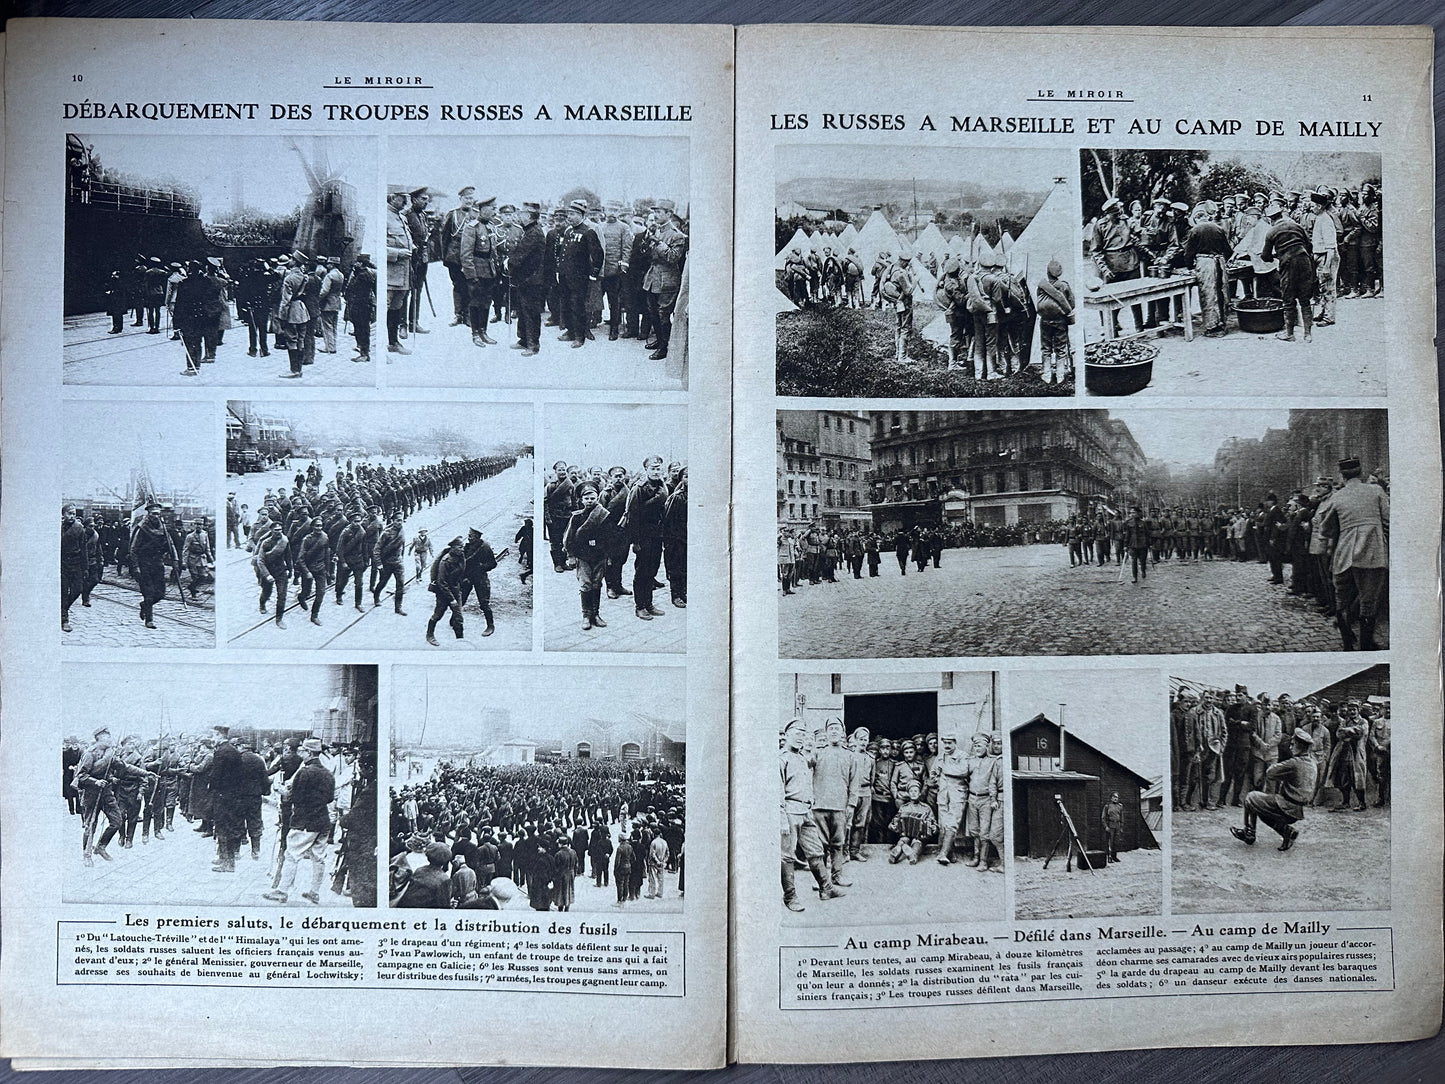 1916 Issue "Le Miroir"